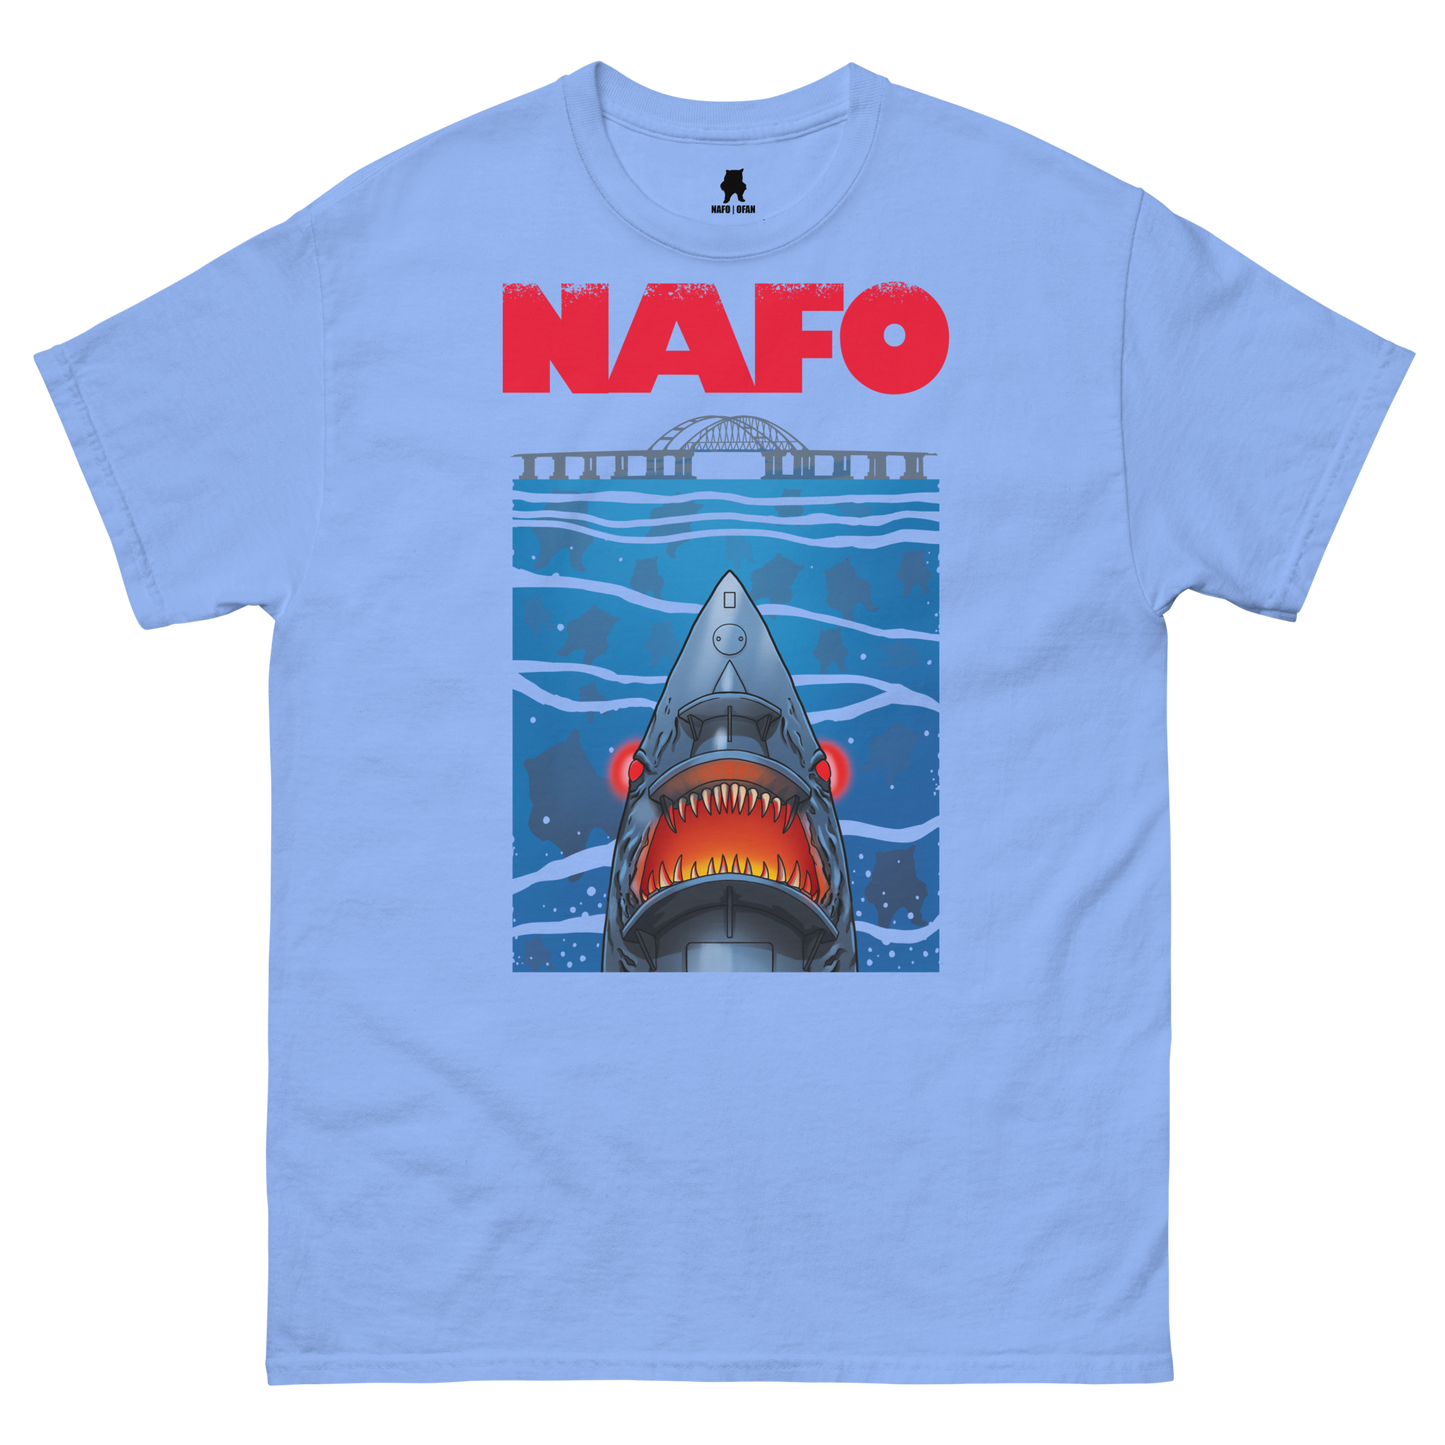 NAFO x Grandpa Yurko Shark Drone T-Shirt